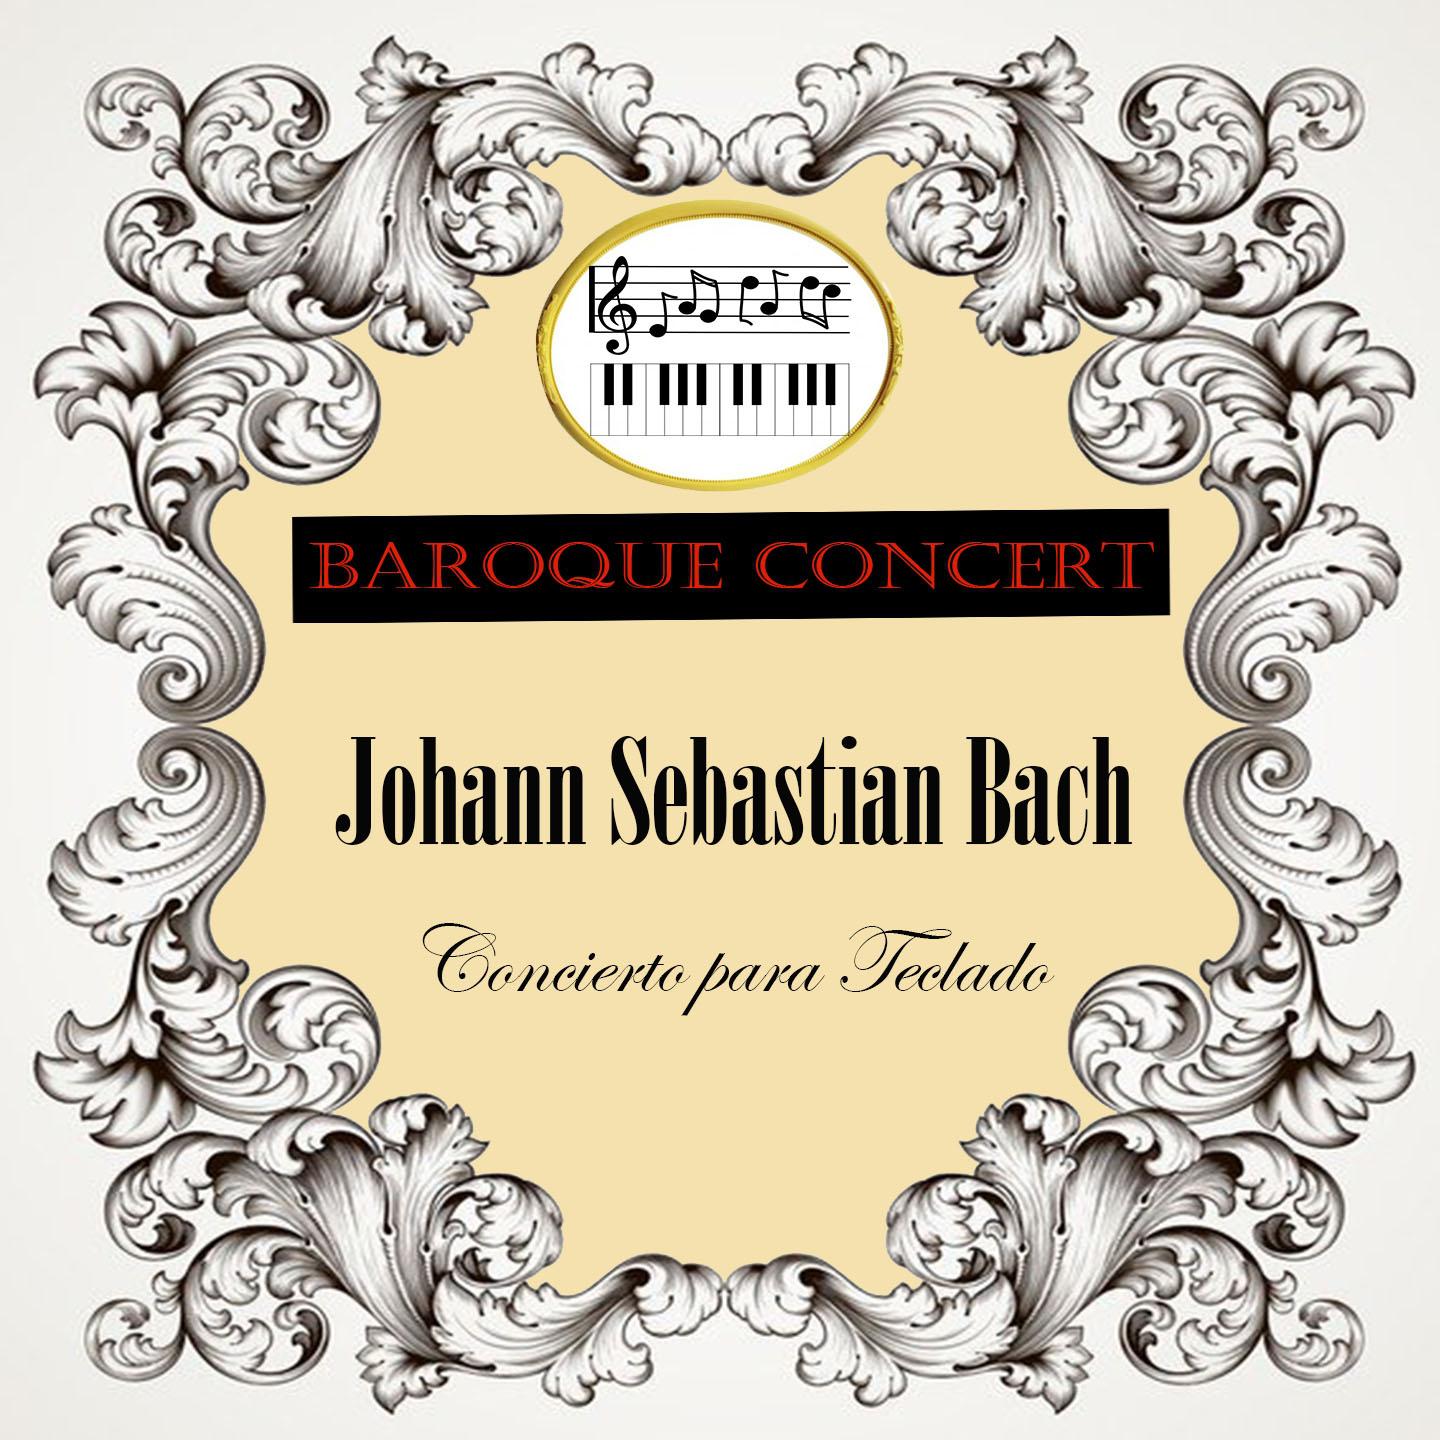 Baroque Concert, Johann Sebastian Bach, Concierto para Teclado